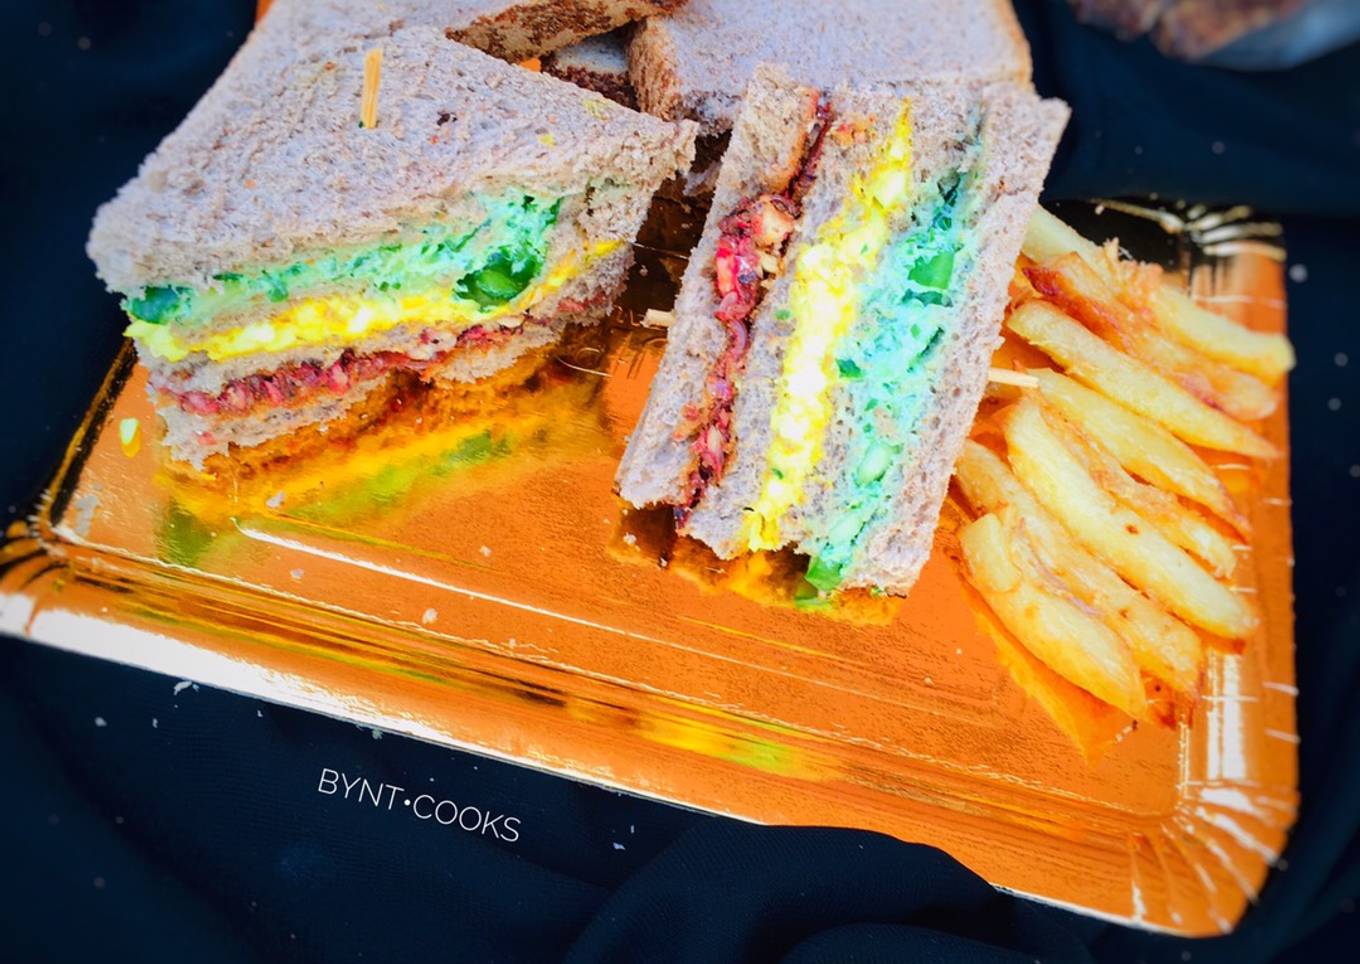 Club sandwiches with a twist